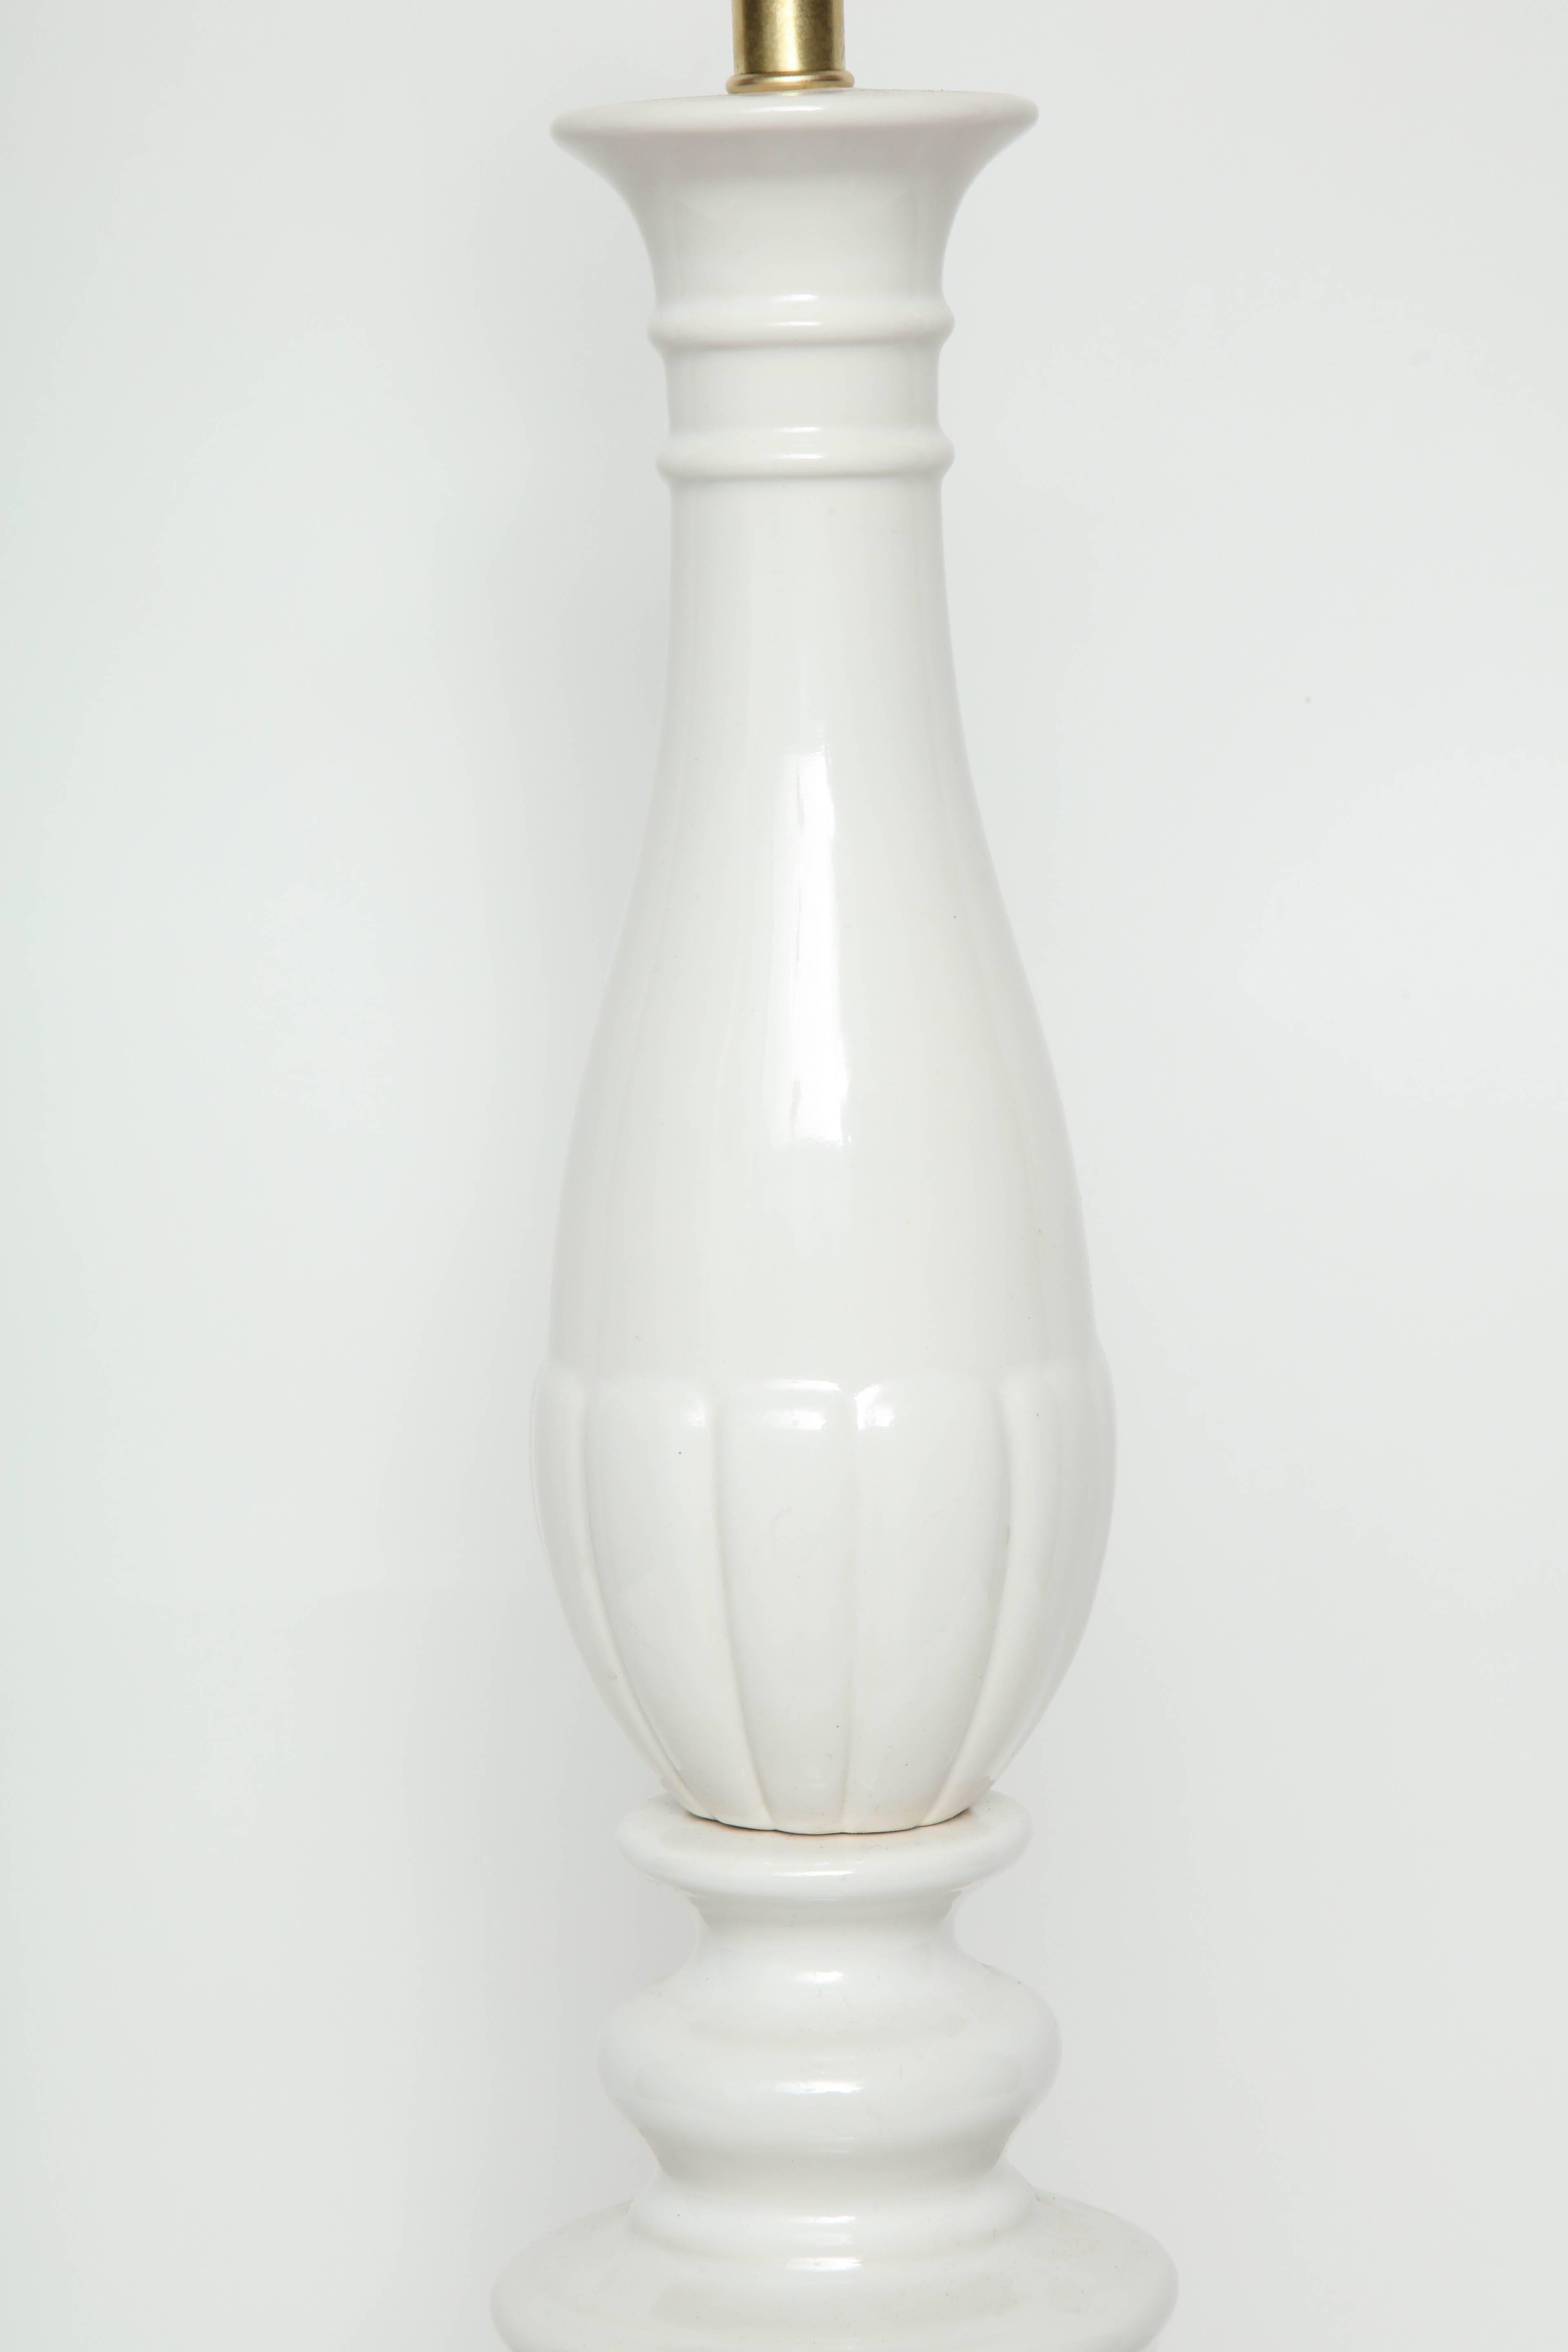 Hollywood Regency Blanc De Chine Baluster Porcelain Lamps For Sale